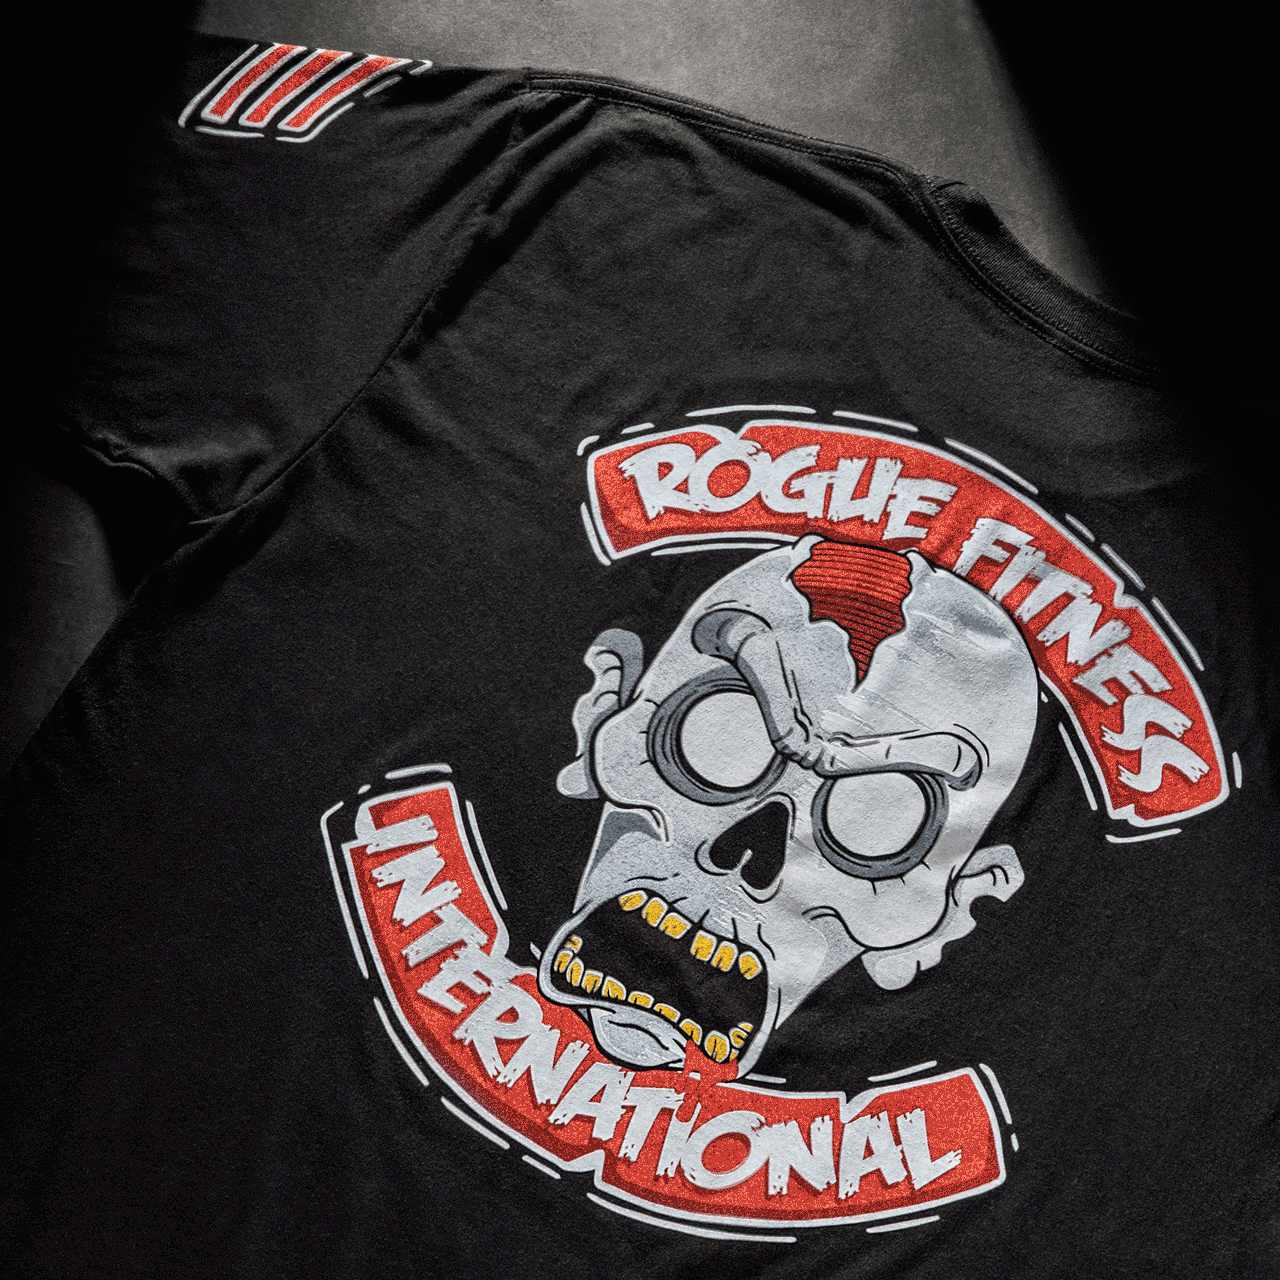 Rogue Halloween International Shirt